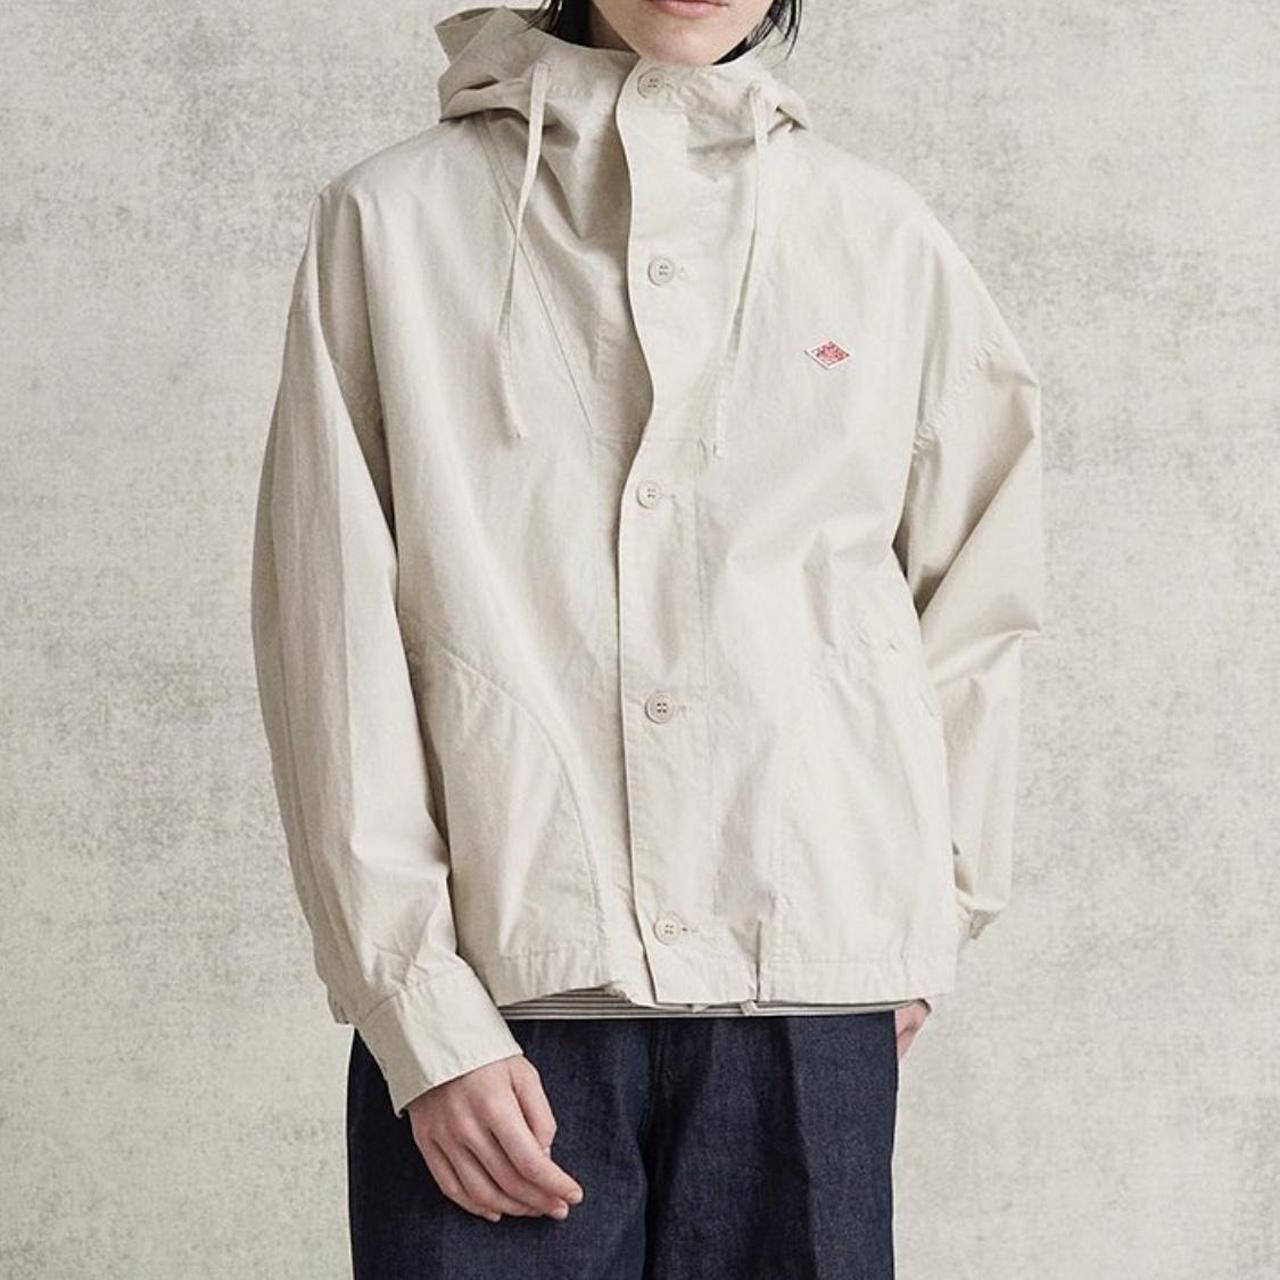 danton #workwear jacket -like new, size 36 -light... - Depop